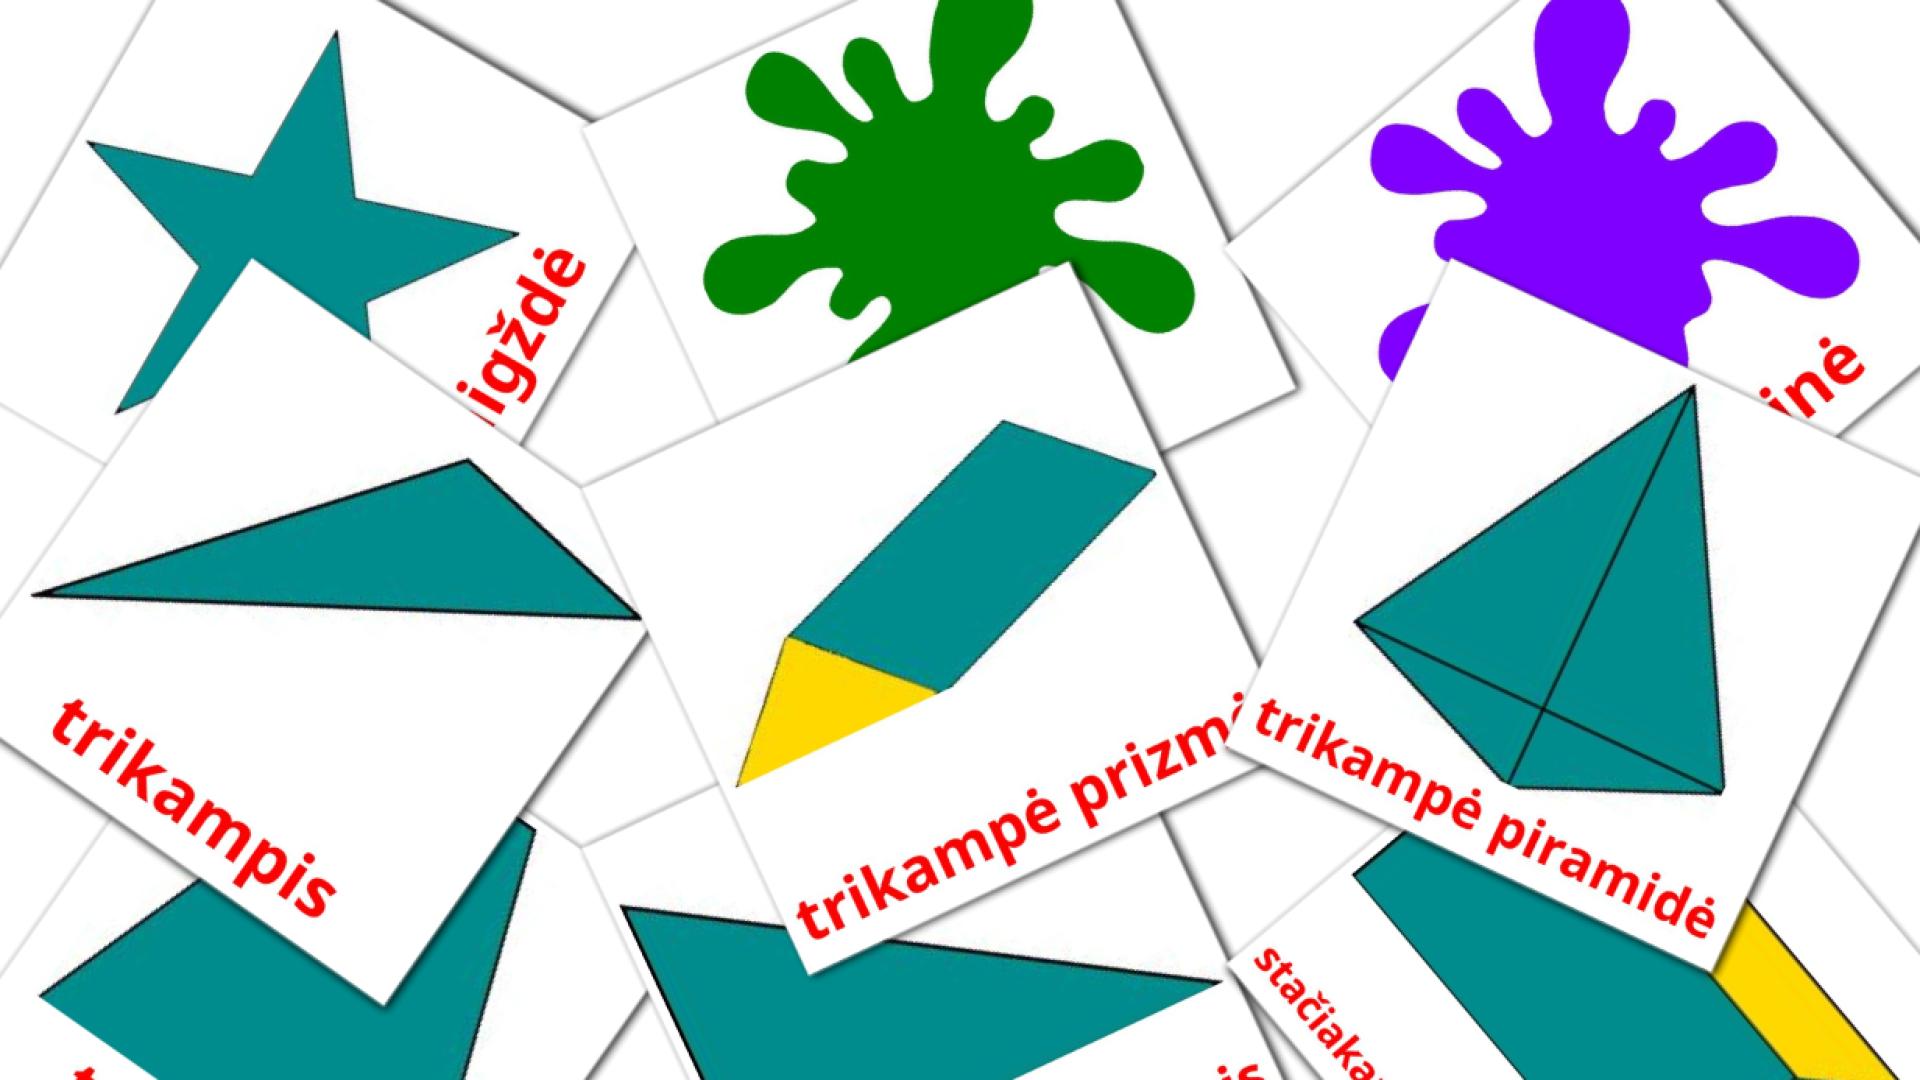 Litauisch Warna den Bentuke Vokabelkarteikarten